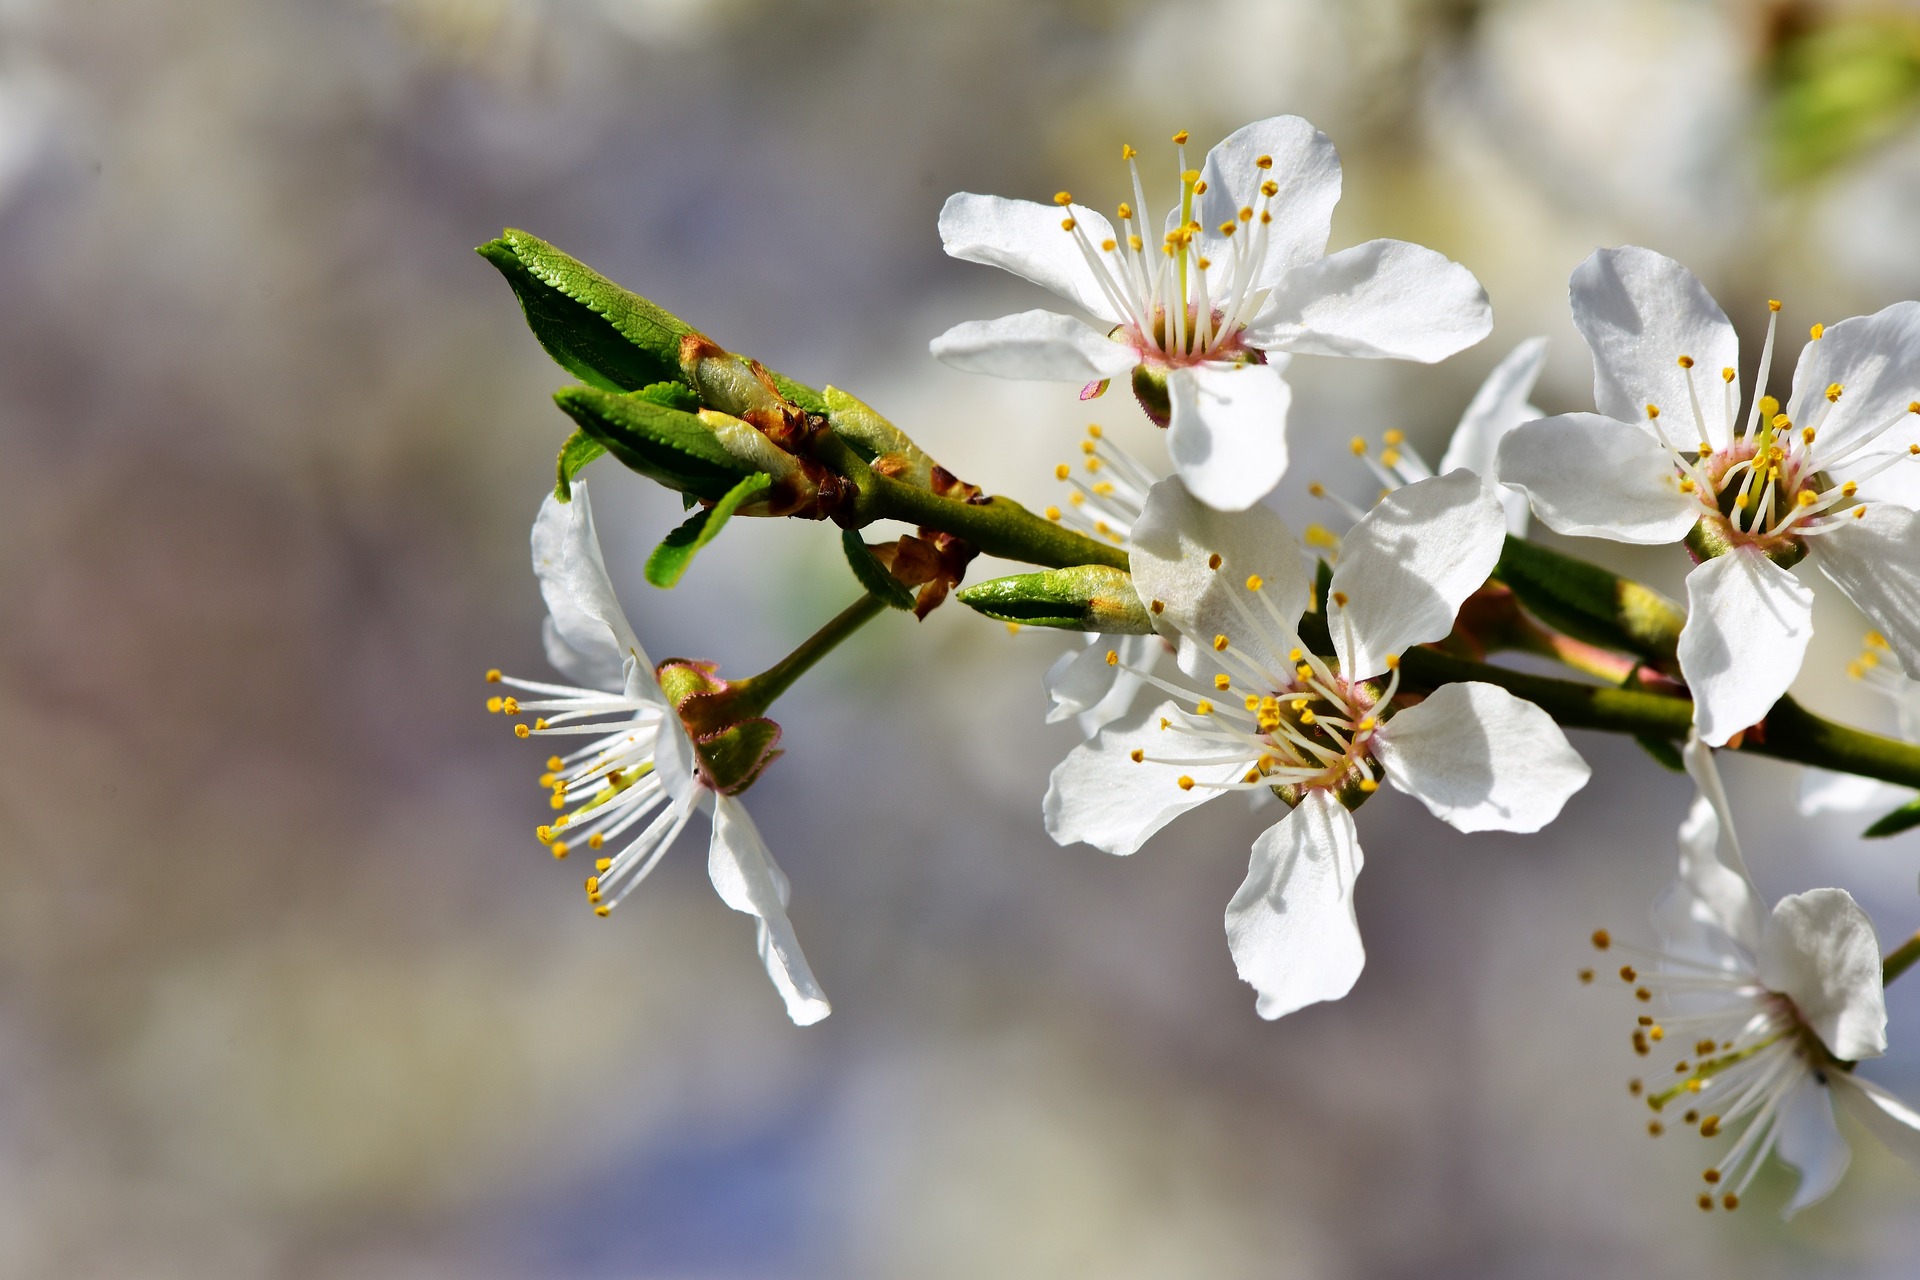 Flores de Ciruelo - The Plum Blossom as a symbol